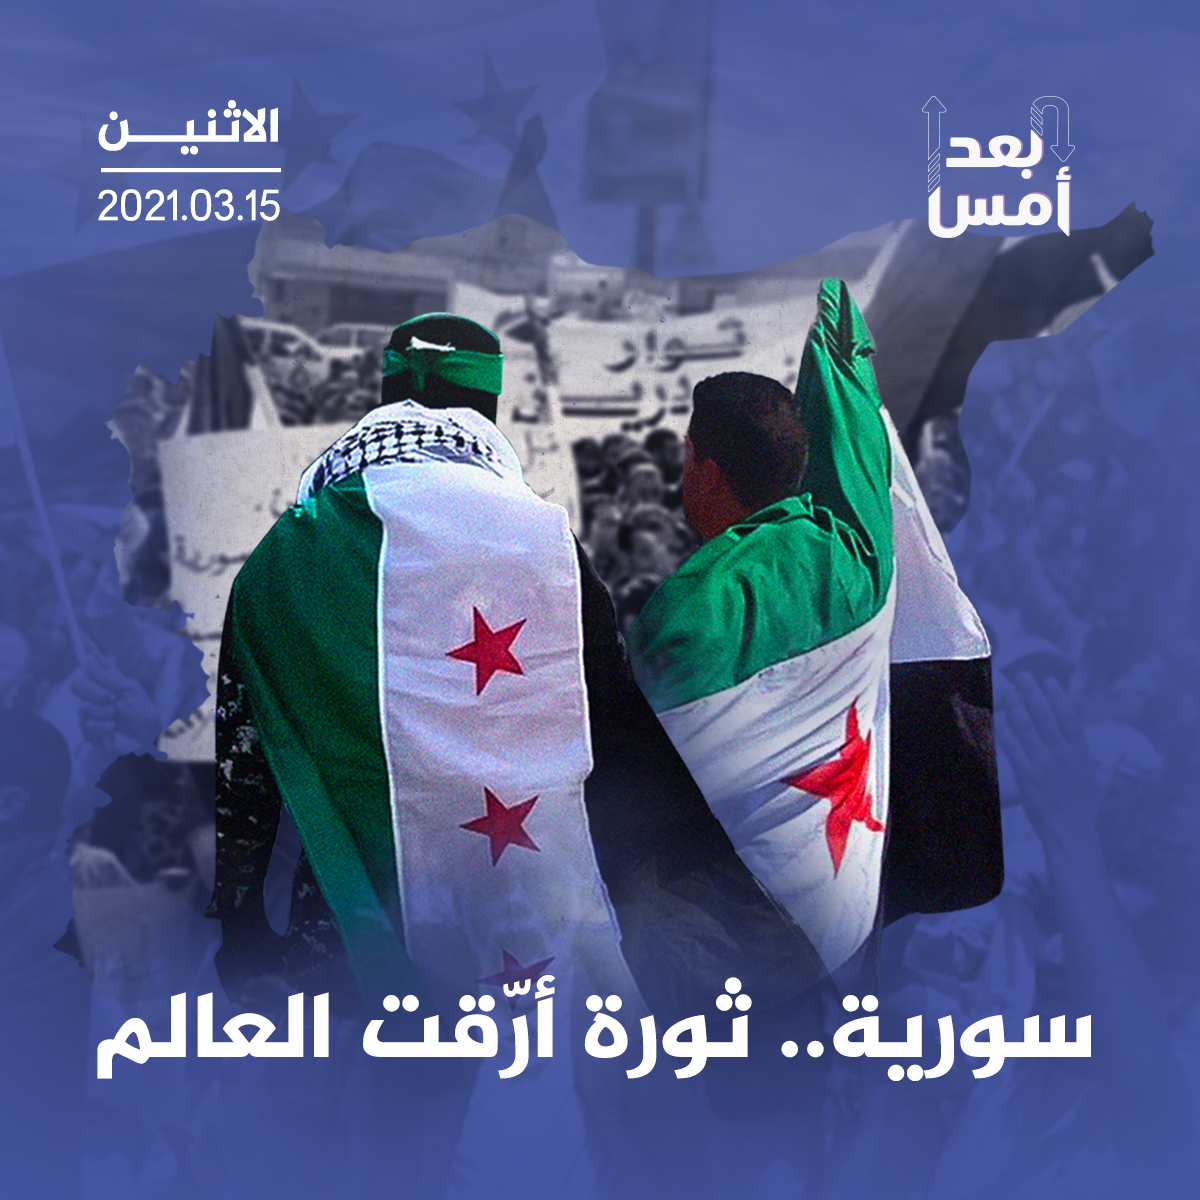 سورية.. ثورة أرّقت العالم